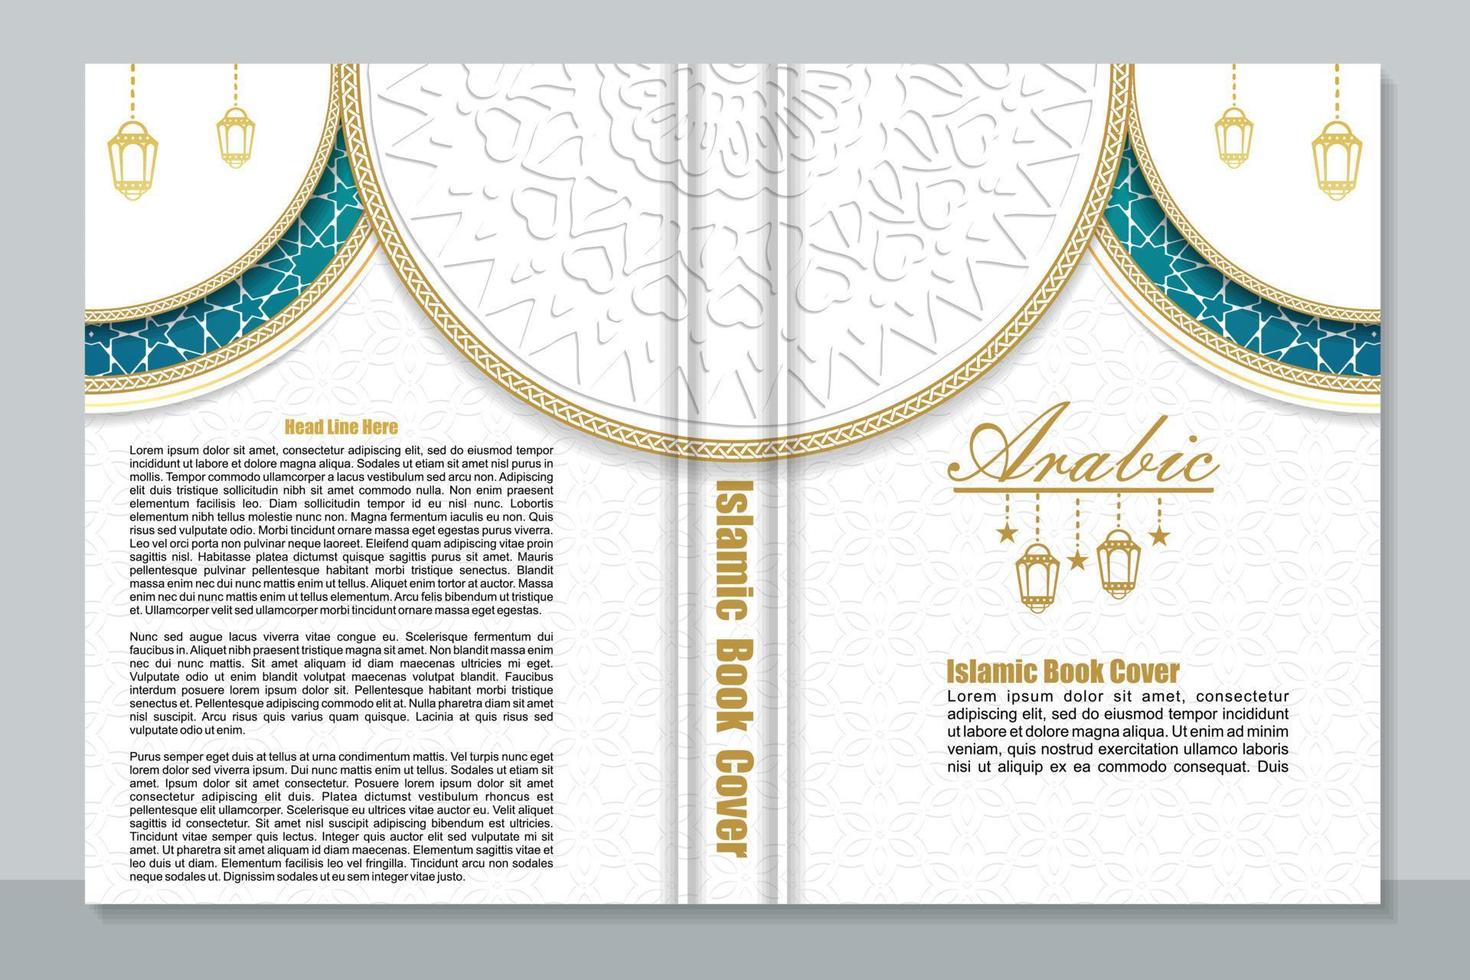 Buchcover-Design im arabischen islamischen Stil vektor